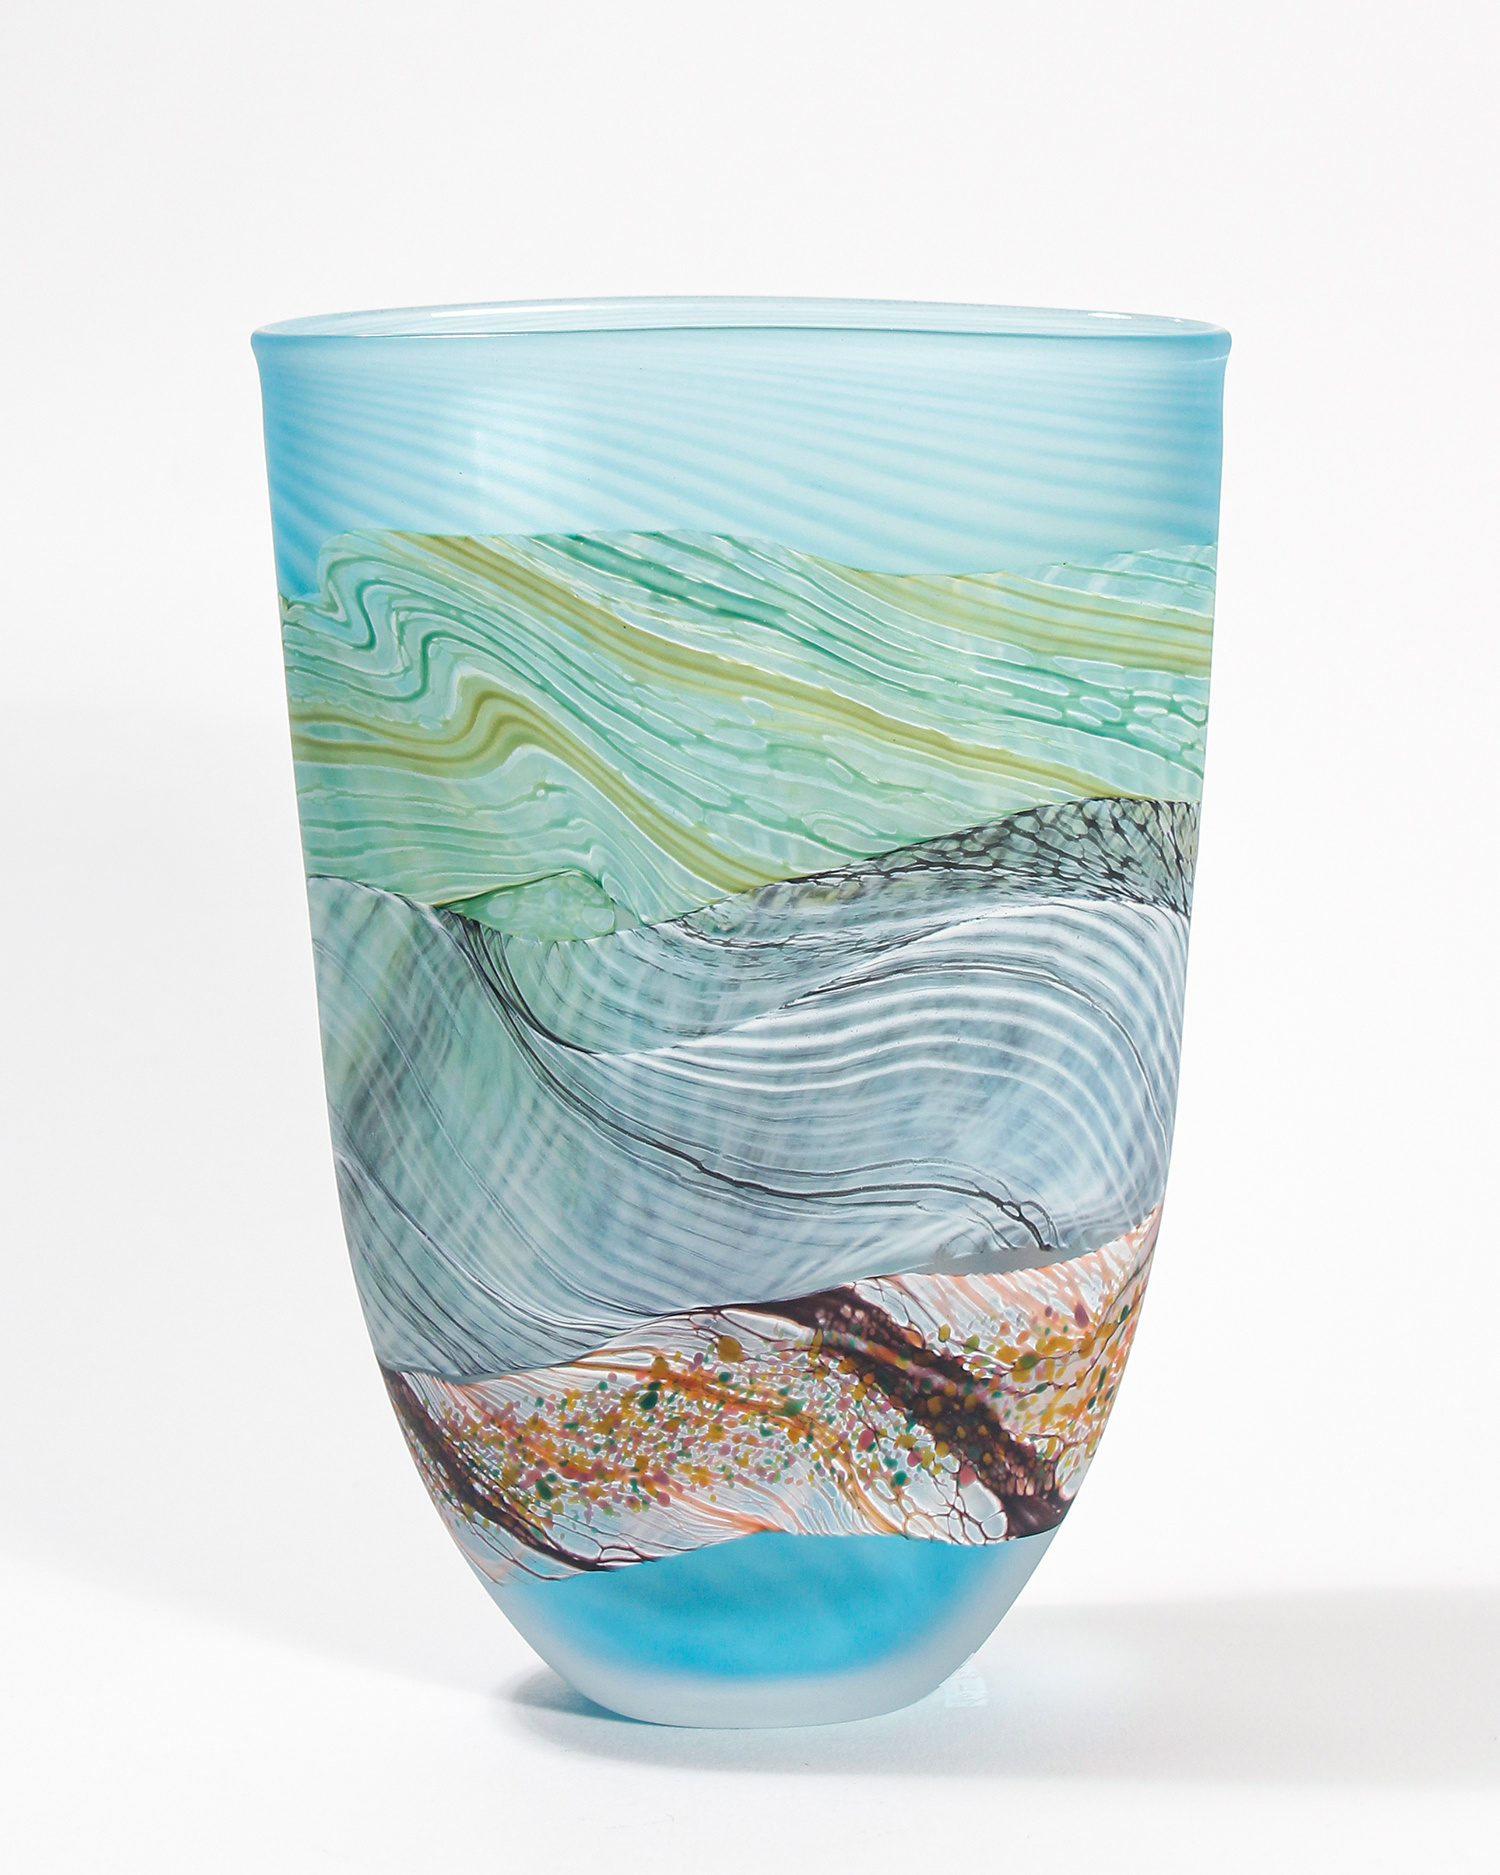 Flint Flat Vase, small by Thomas Petit